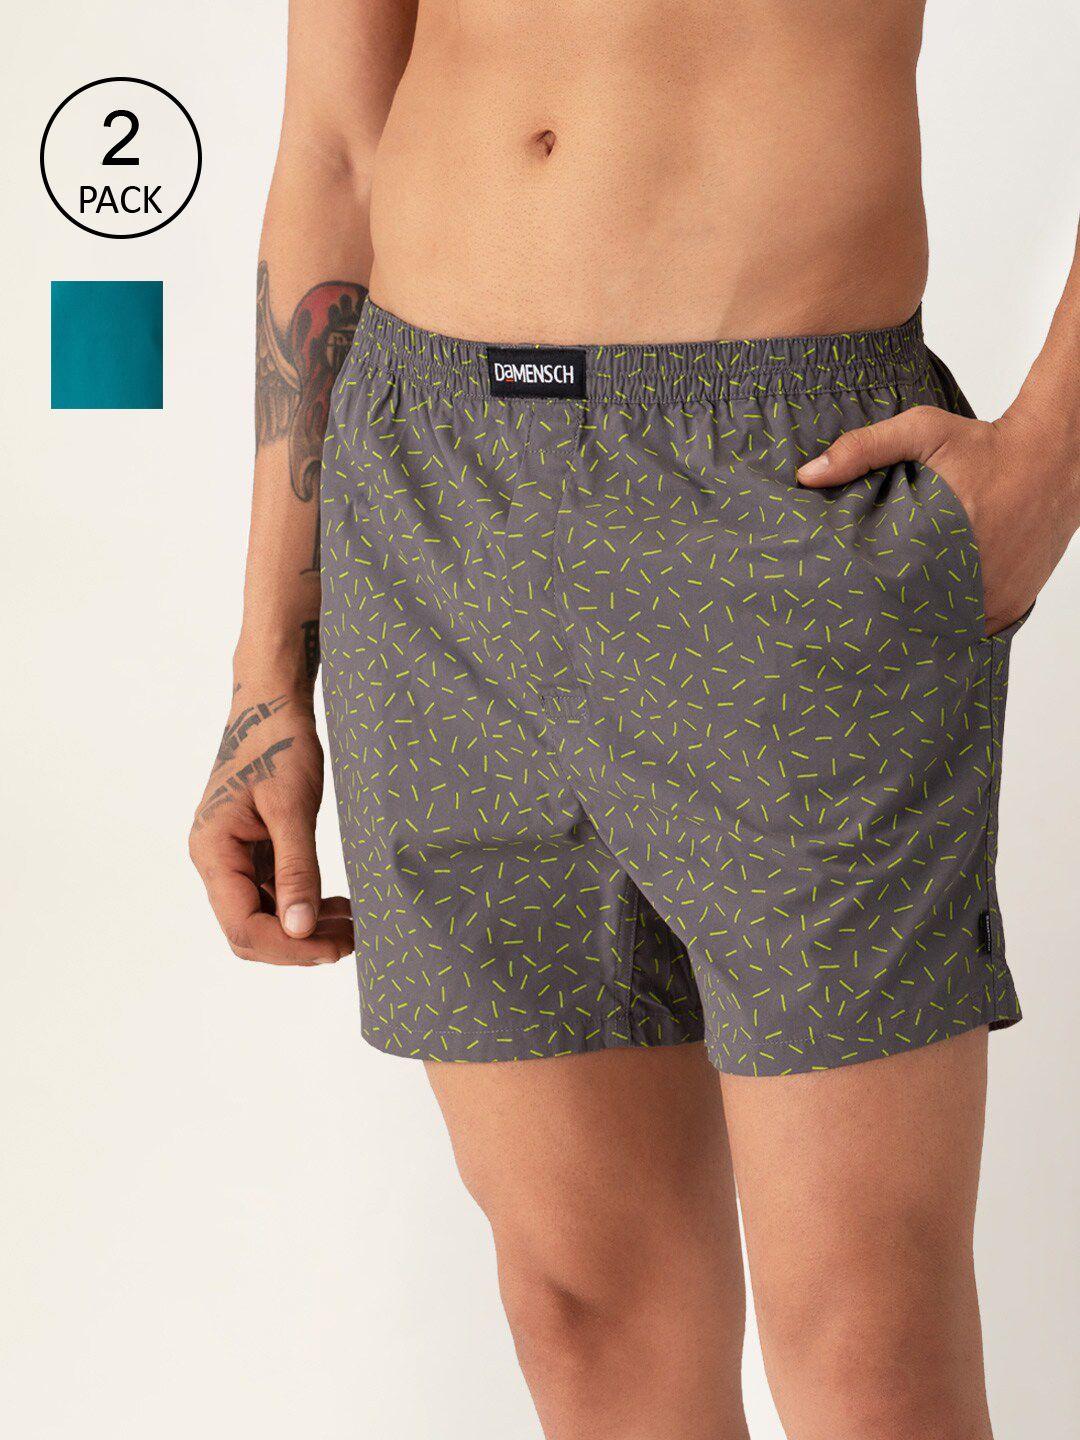 damensch men pack of 2 assorted ultra-light cotton regular fit boxer shorts